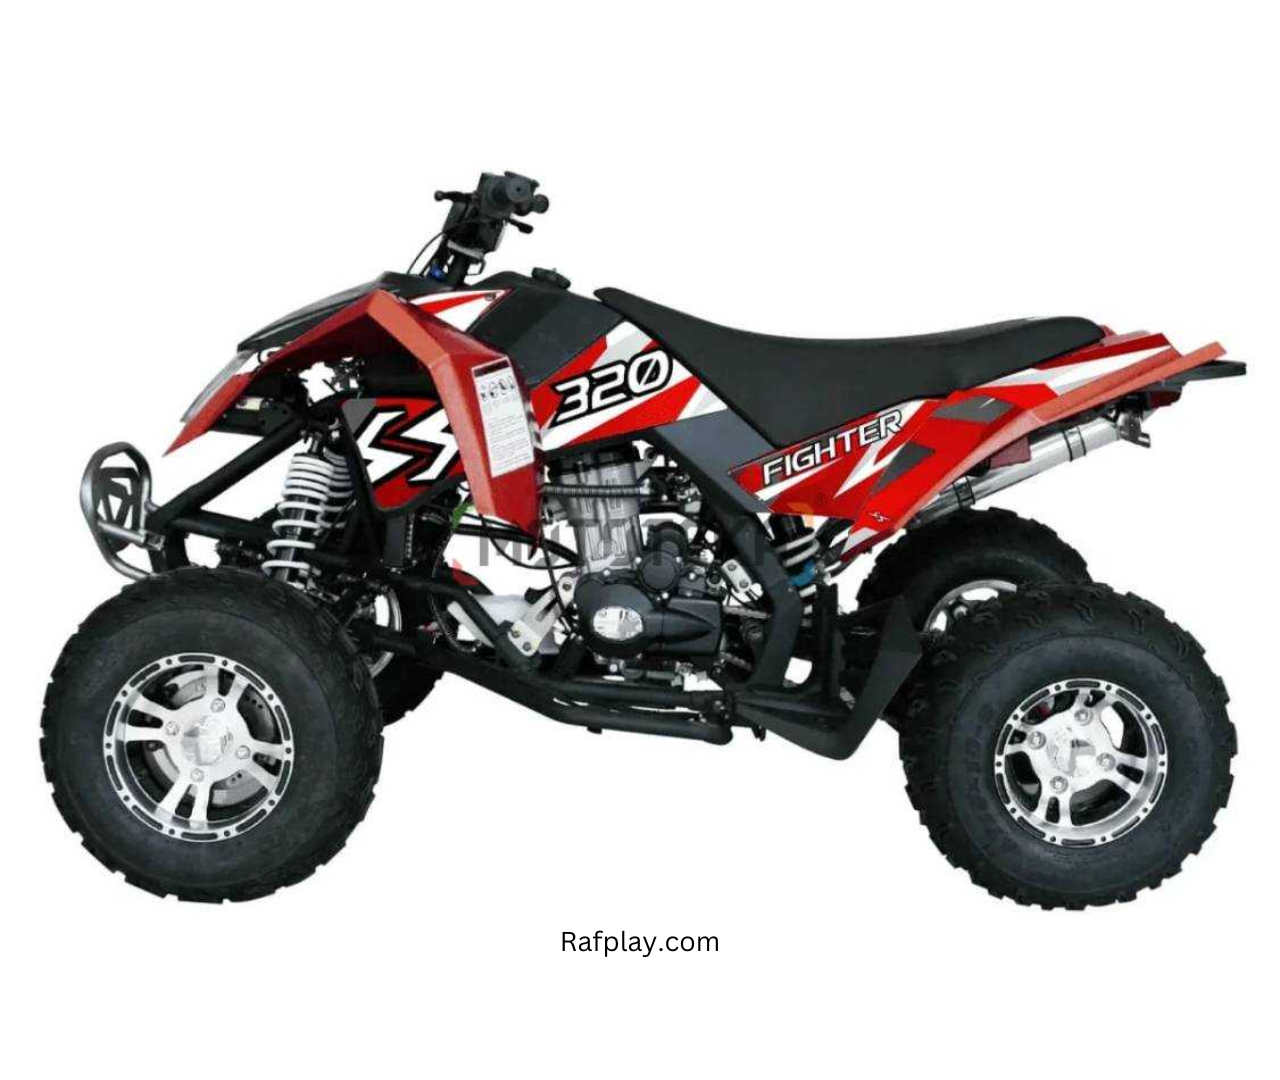 Sharmax 320 FIGHTER ATV